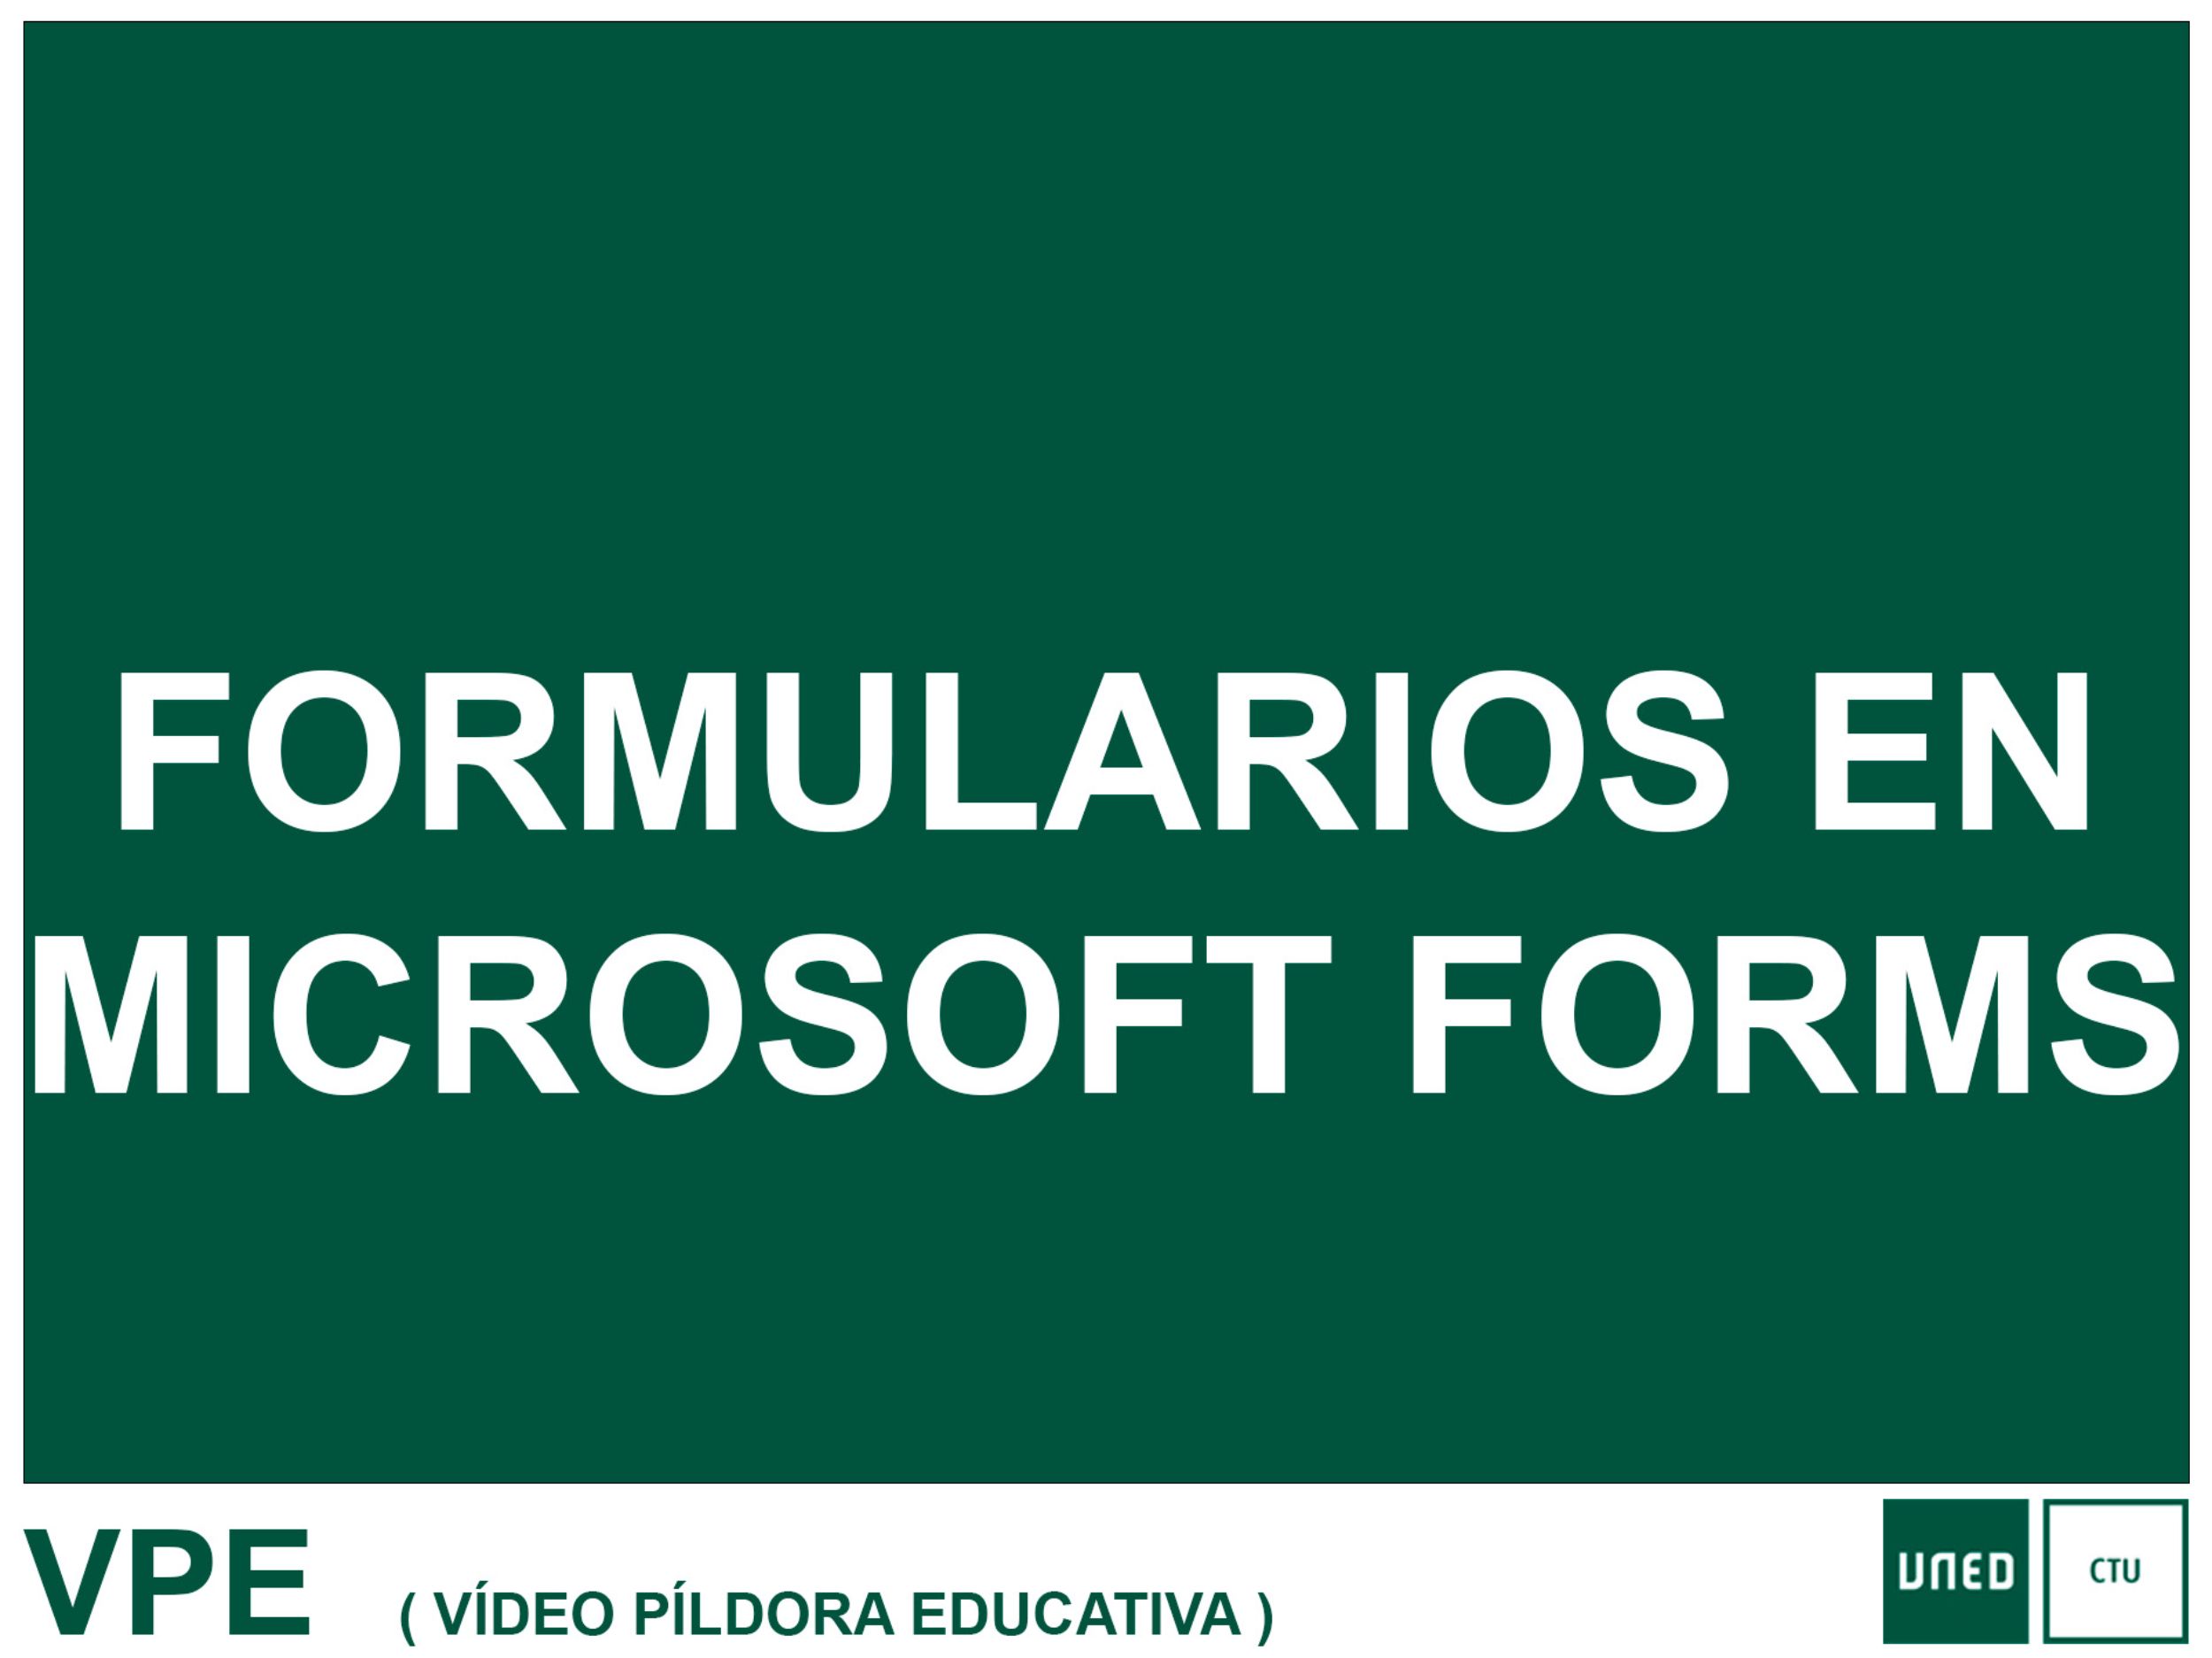 Formularios en Microsoft Forms